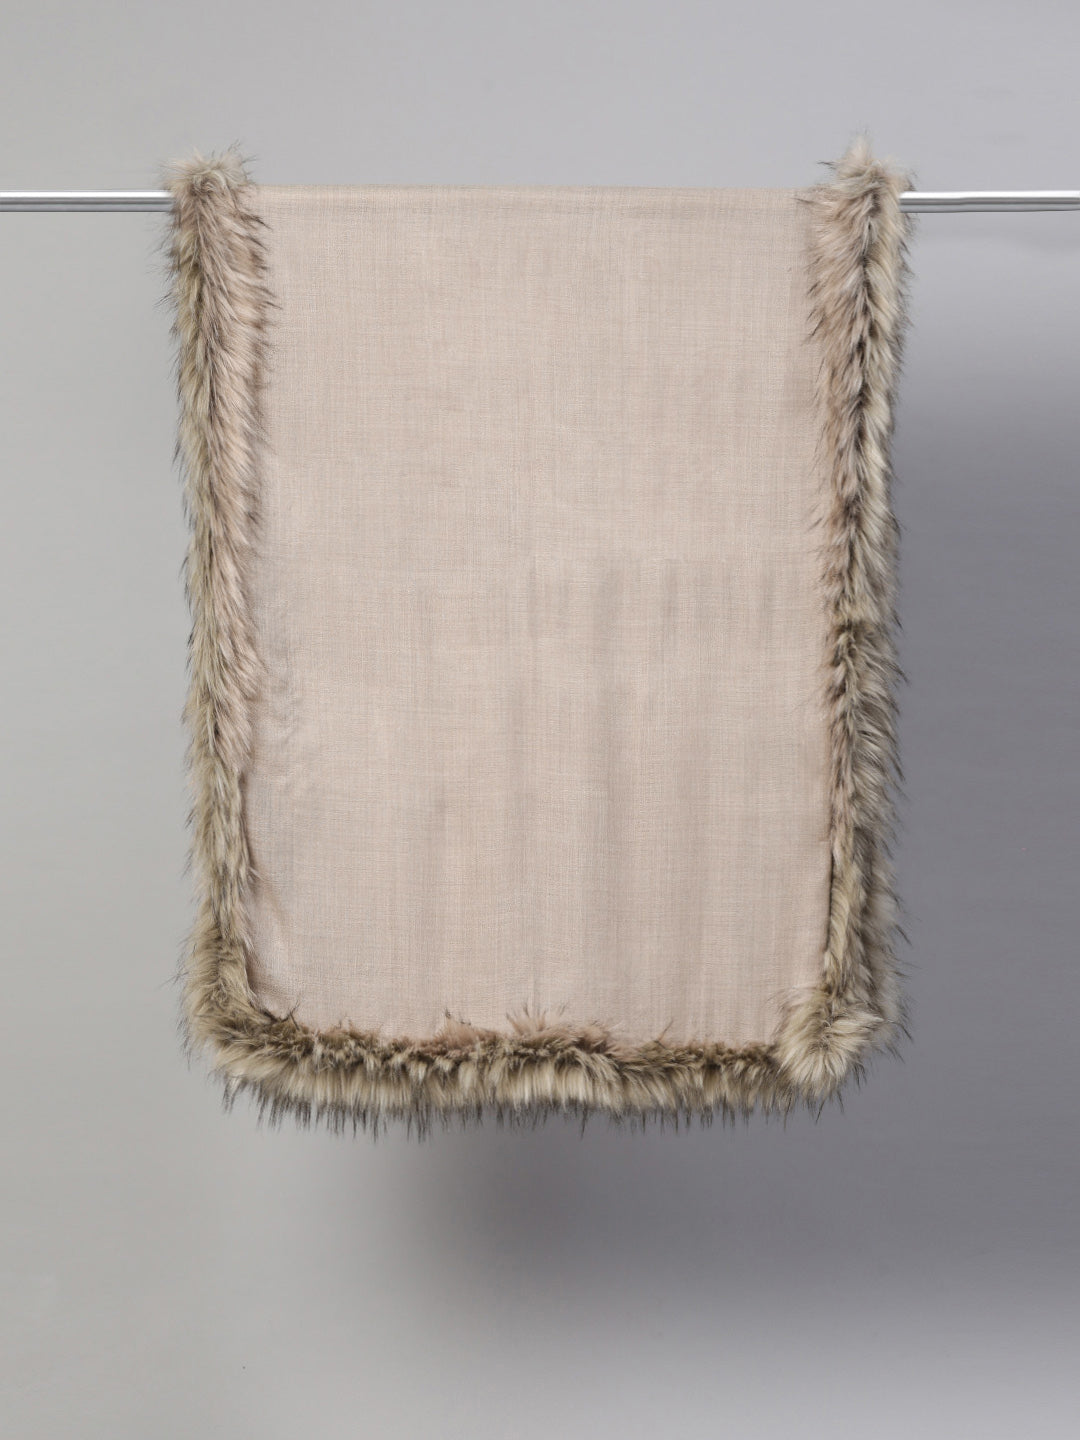 Wool shawl with fur, fur shawl online